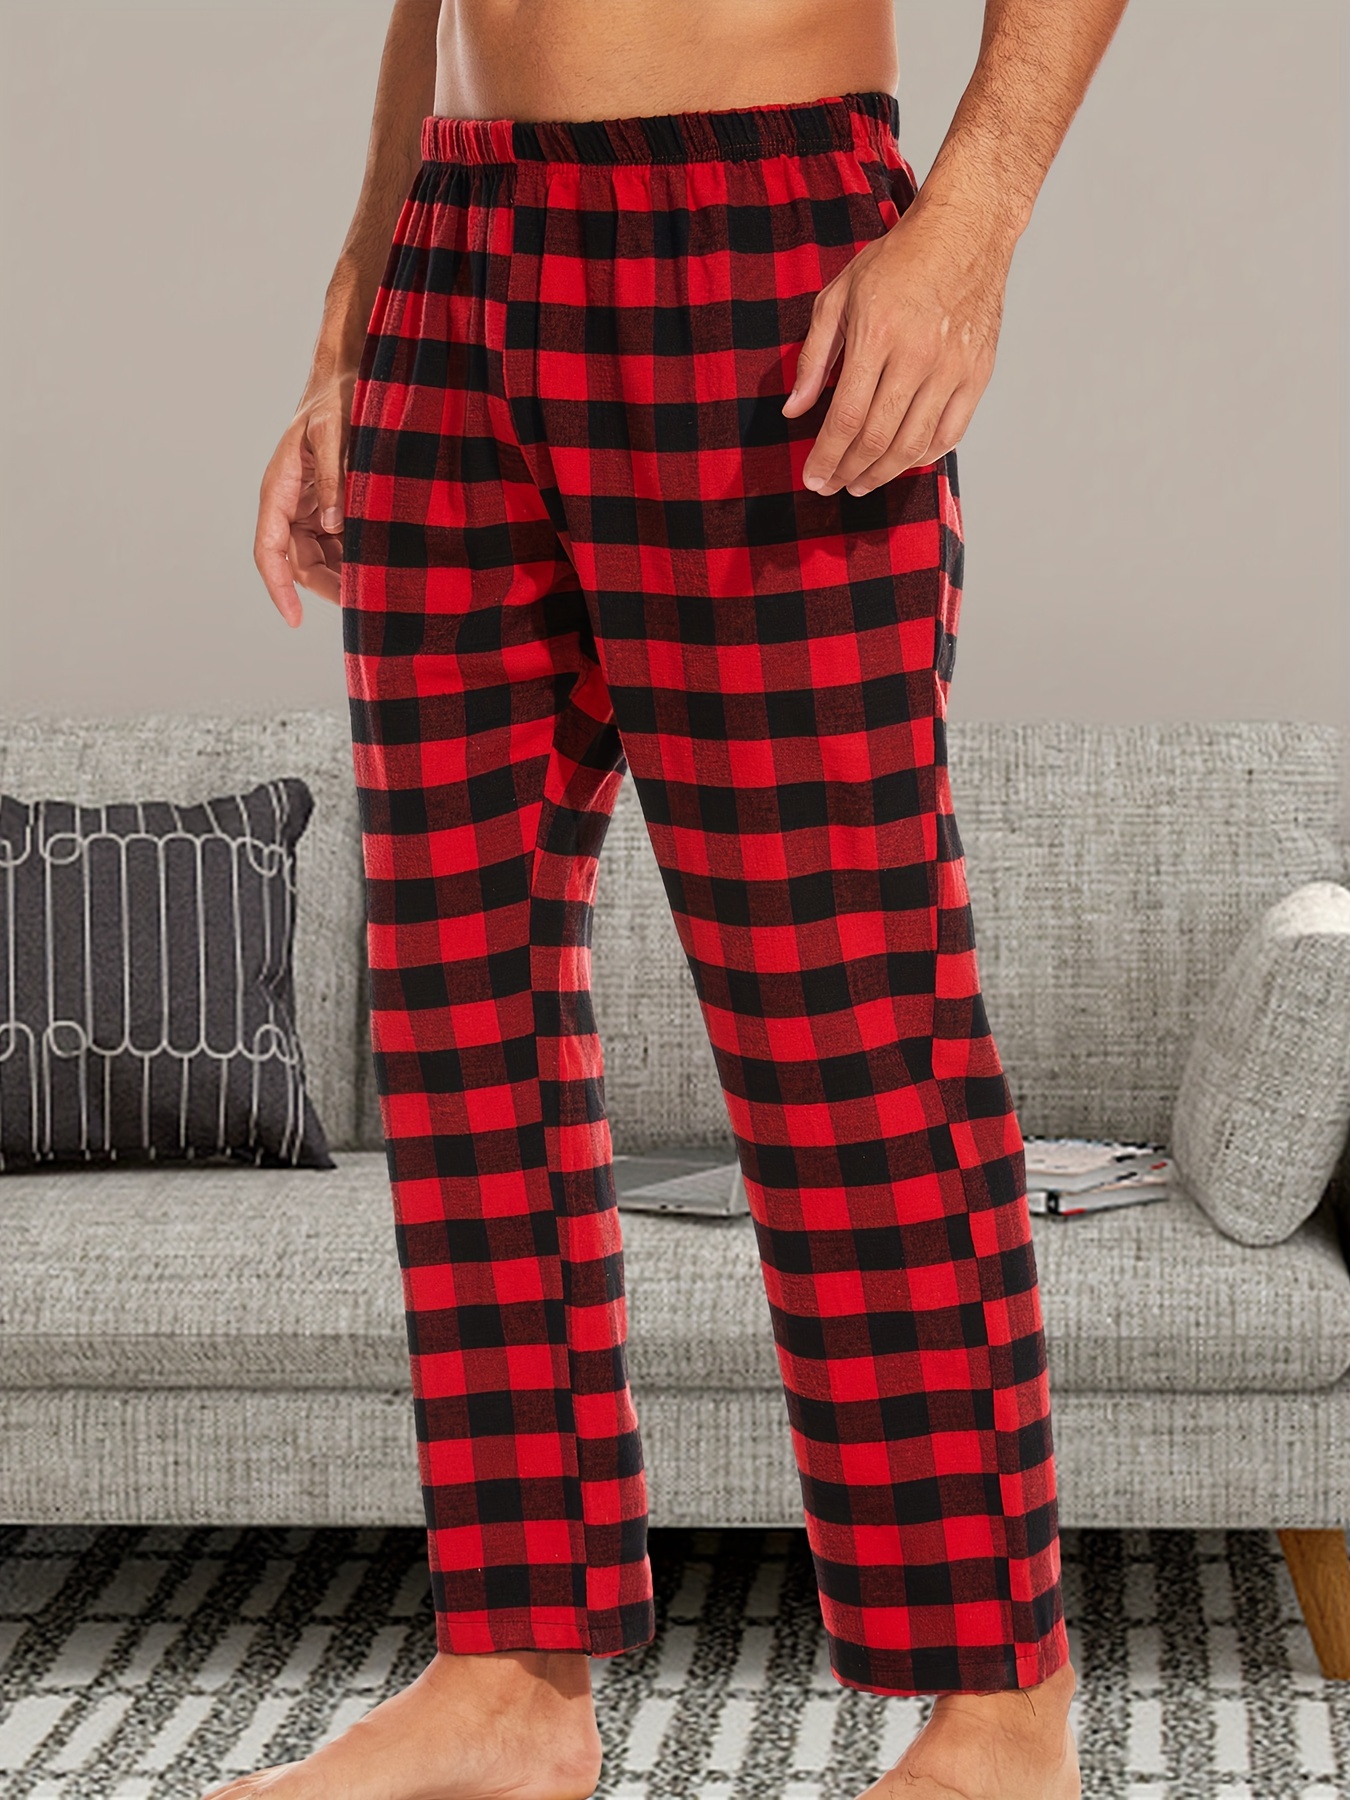 Men's Flannel Pajamas Pants Set Cotton Plaid Pjs Bottoms - Temu Canada